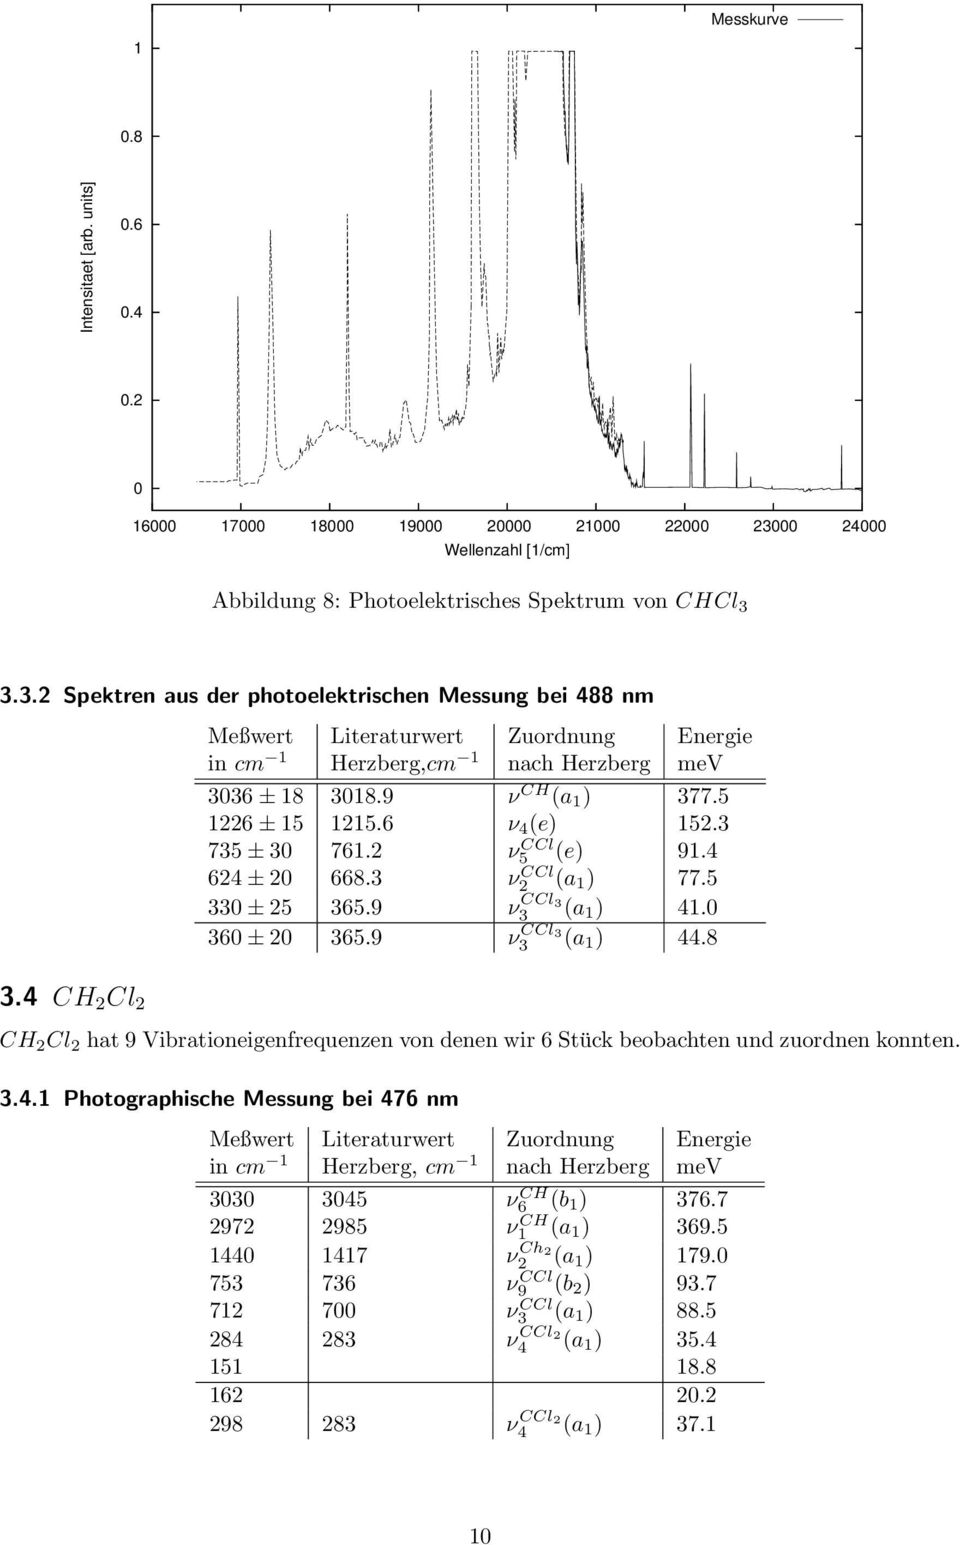 3.3.2 Spektren aus der photoelektrischen Messung bei 488 nm Meßwert Literaturwert Zuordnung Energie in cm 1 Herzberg,cm 1 nach Herzberg mev 3036 ± 18 3018.9 ν CH (a 1 ) 377.5 1226 ± 15 1215.